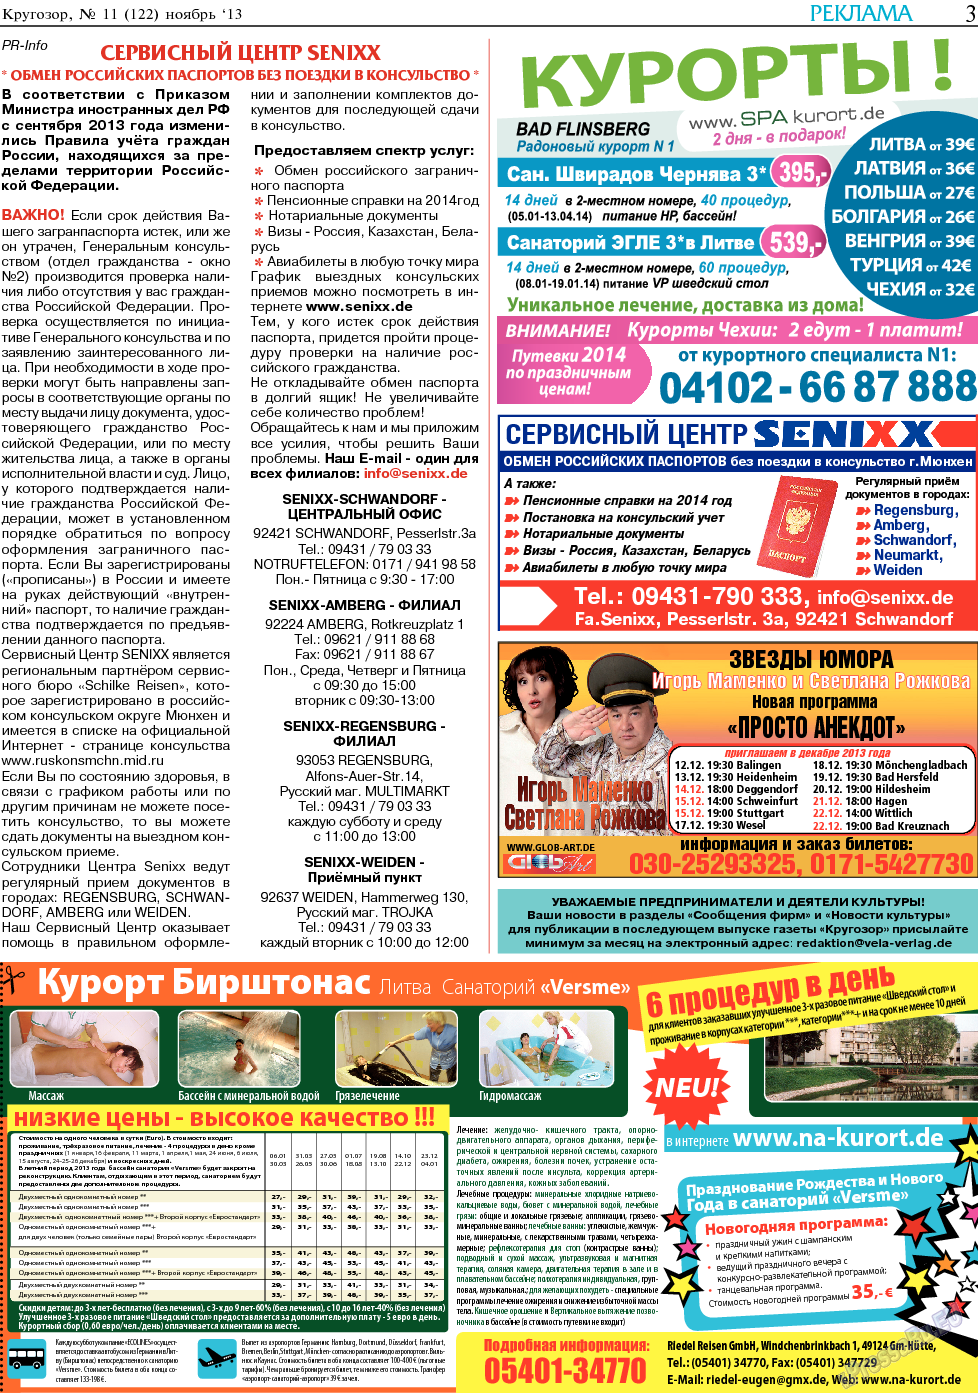 Кругозор, газета. 2013 №11 стр.3